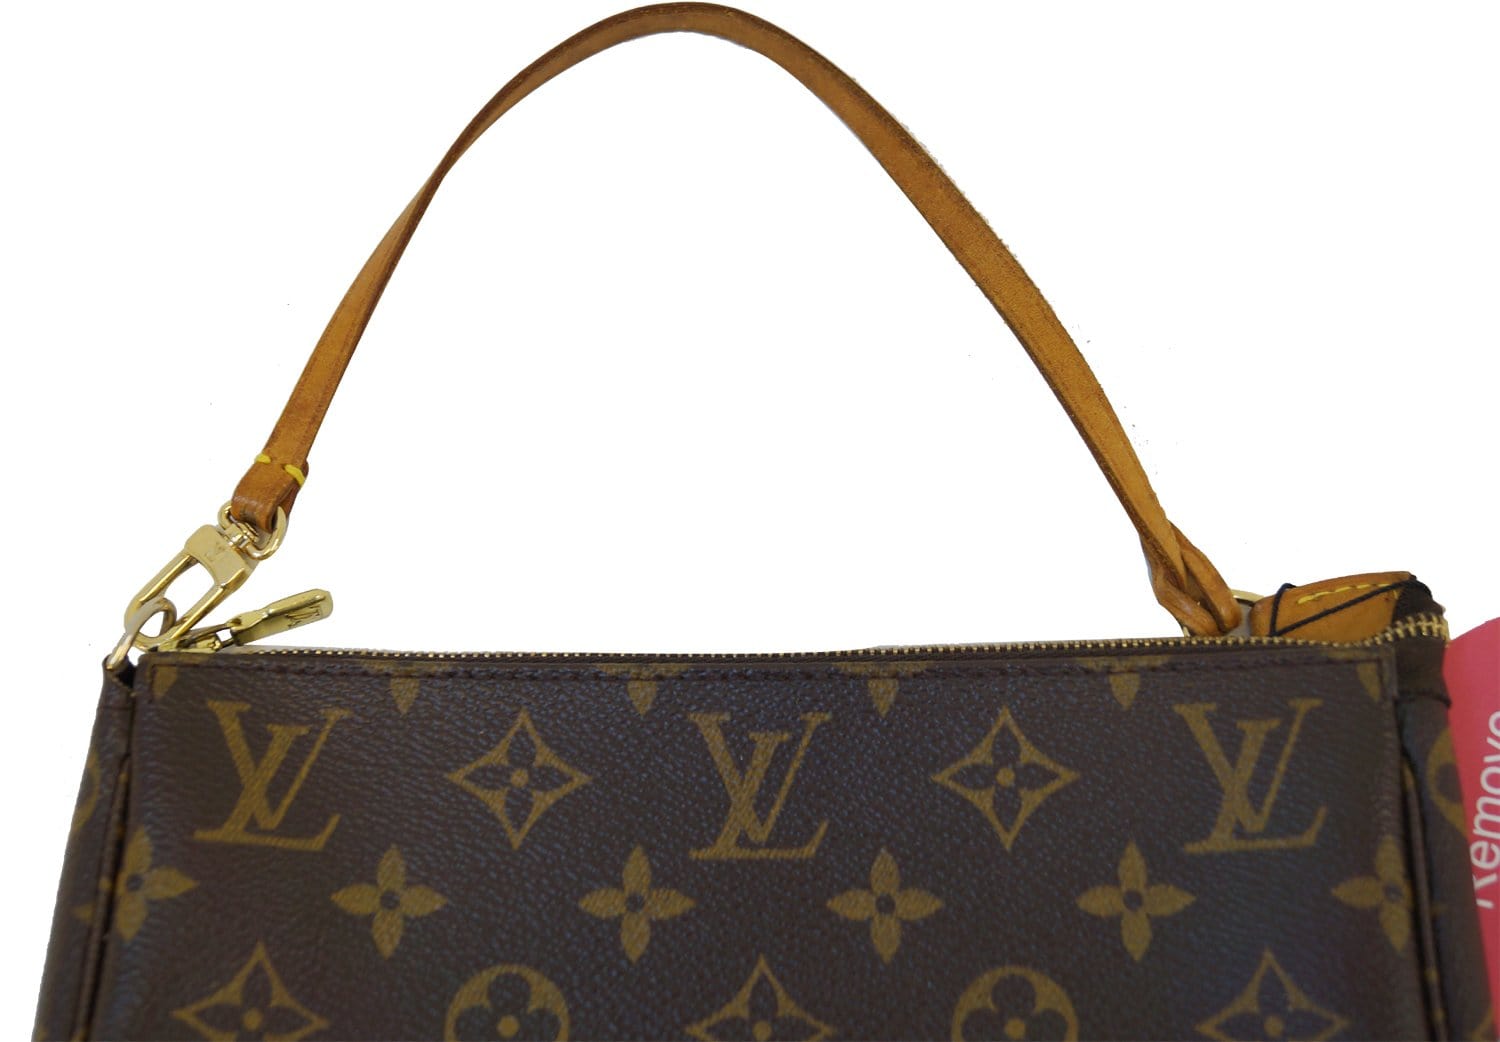 Buy Online Louis Vuitton-MONO POCHETTE ACCESSOIRES-M40712 at Affordable  Price